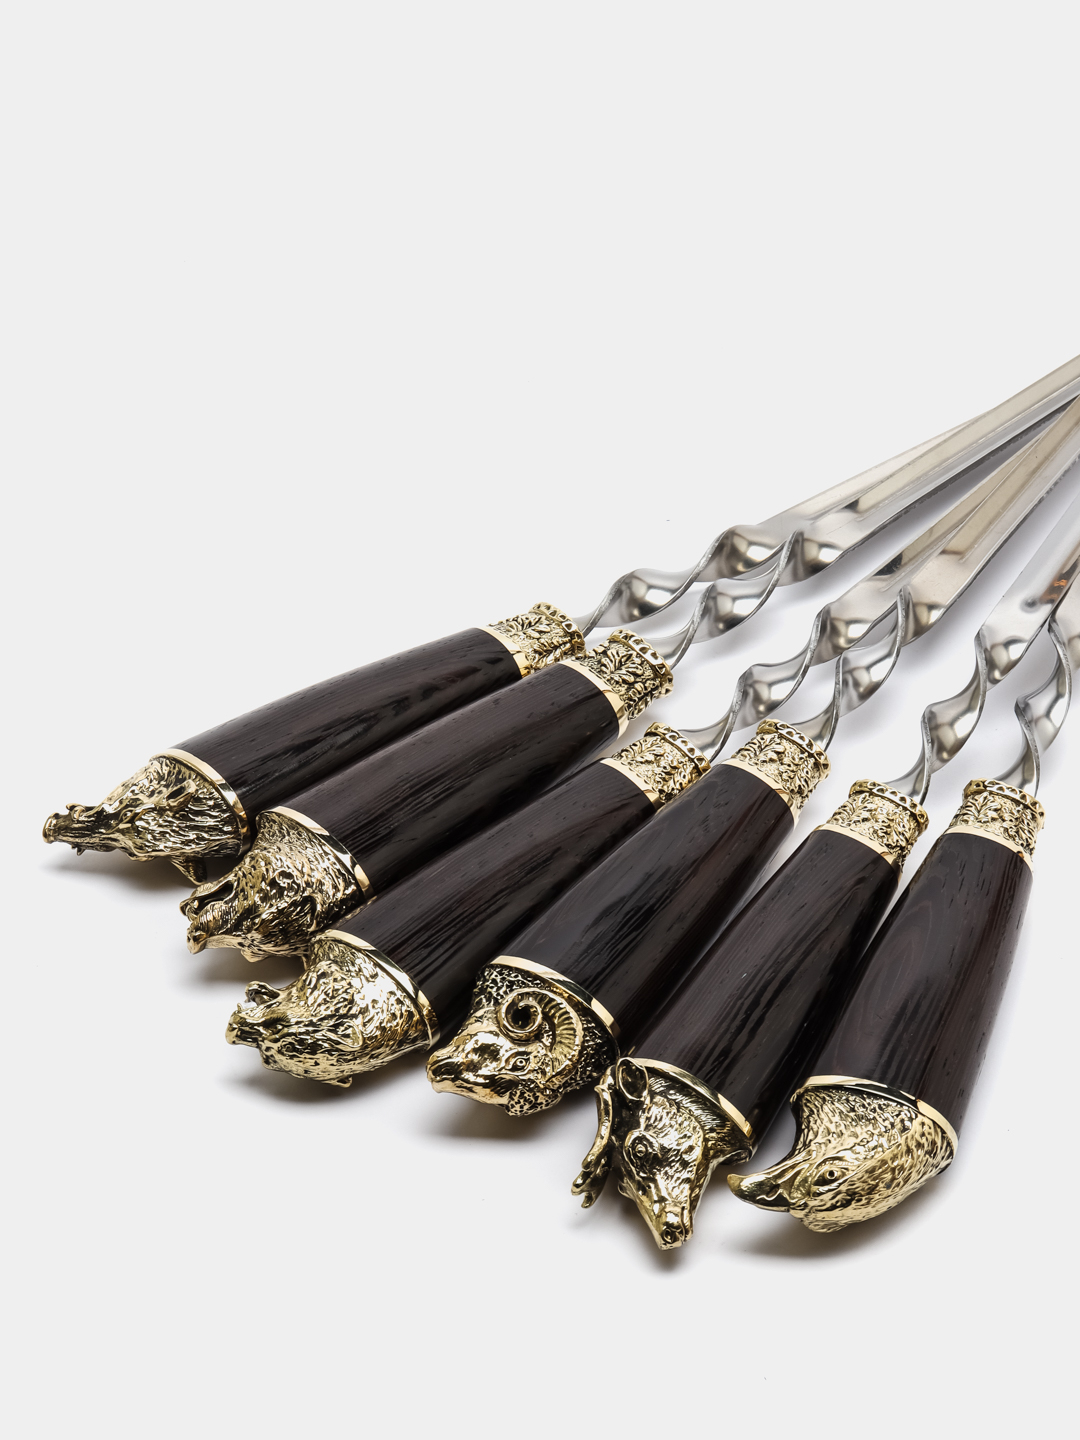 Подарочный набор шампуров - шампура с деревянной ручкой 